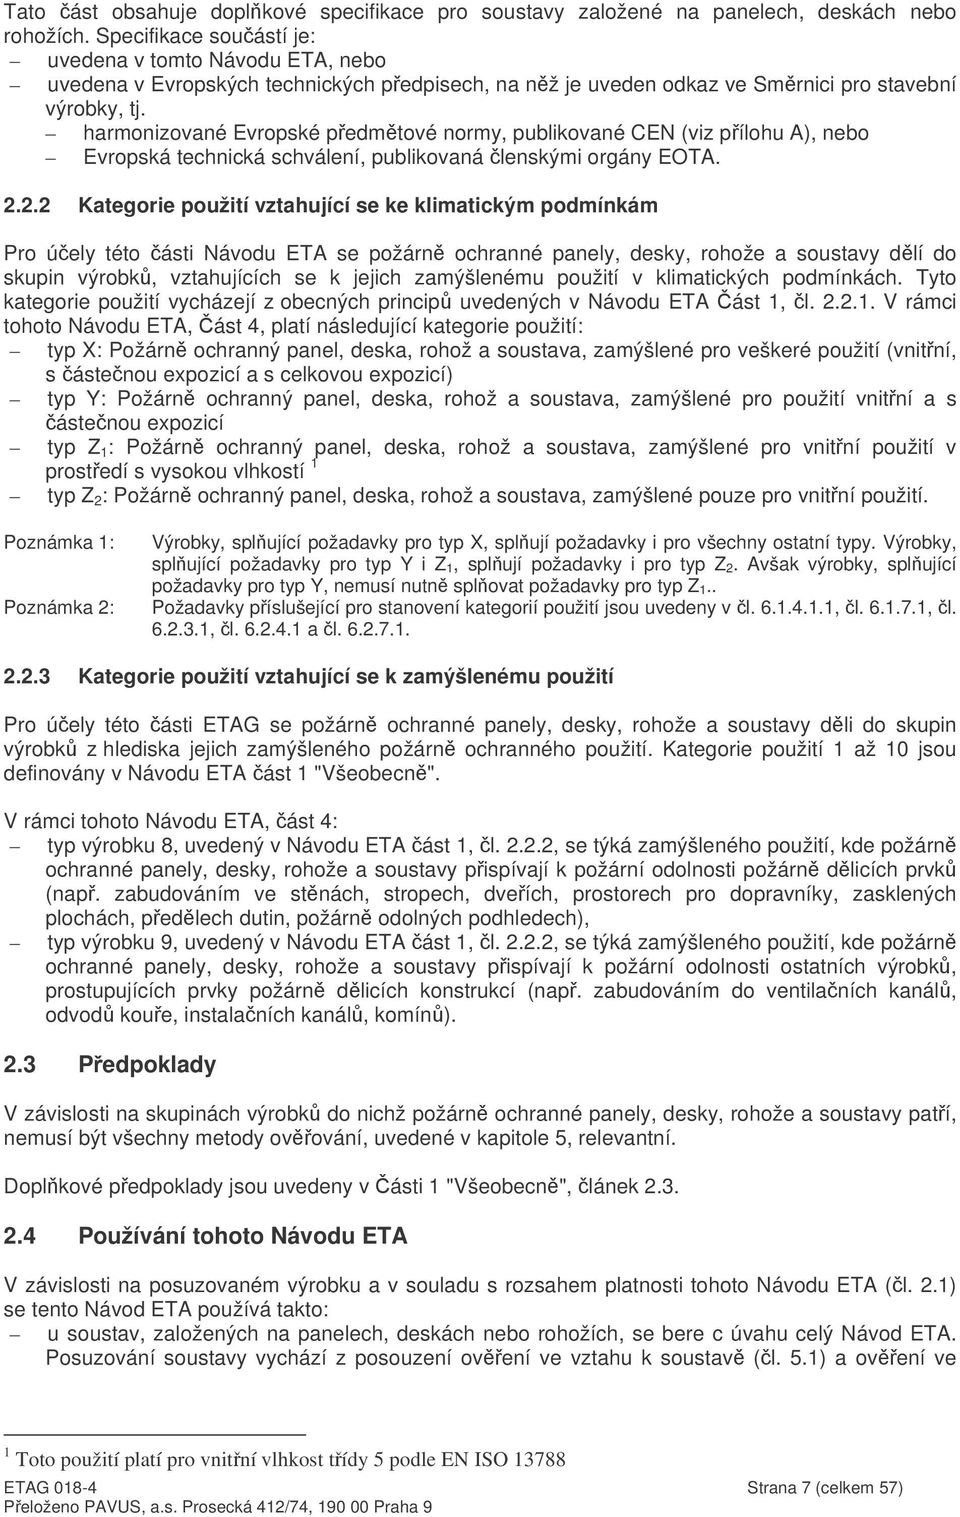 harmonizované Evropské pedmtové normy, publikované CEN (viz pílohu A), nebo Evropská technická schválení, publikovaná lenskými orgány EOTA. 2.